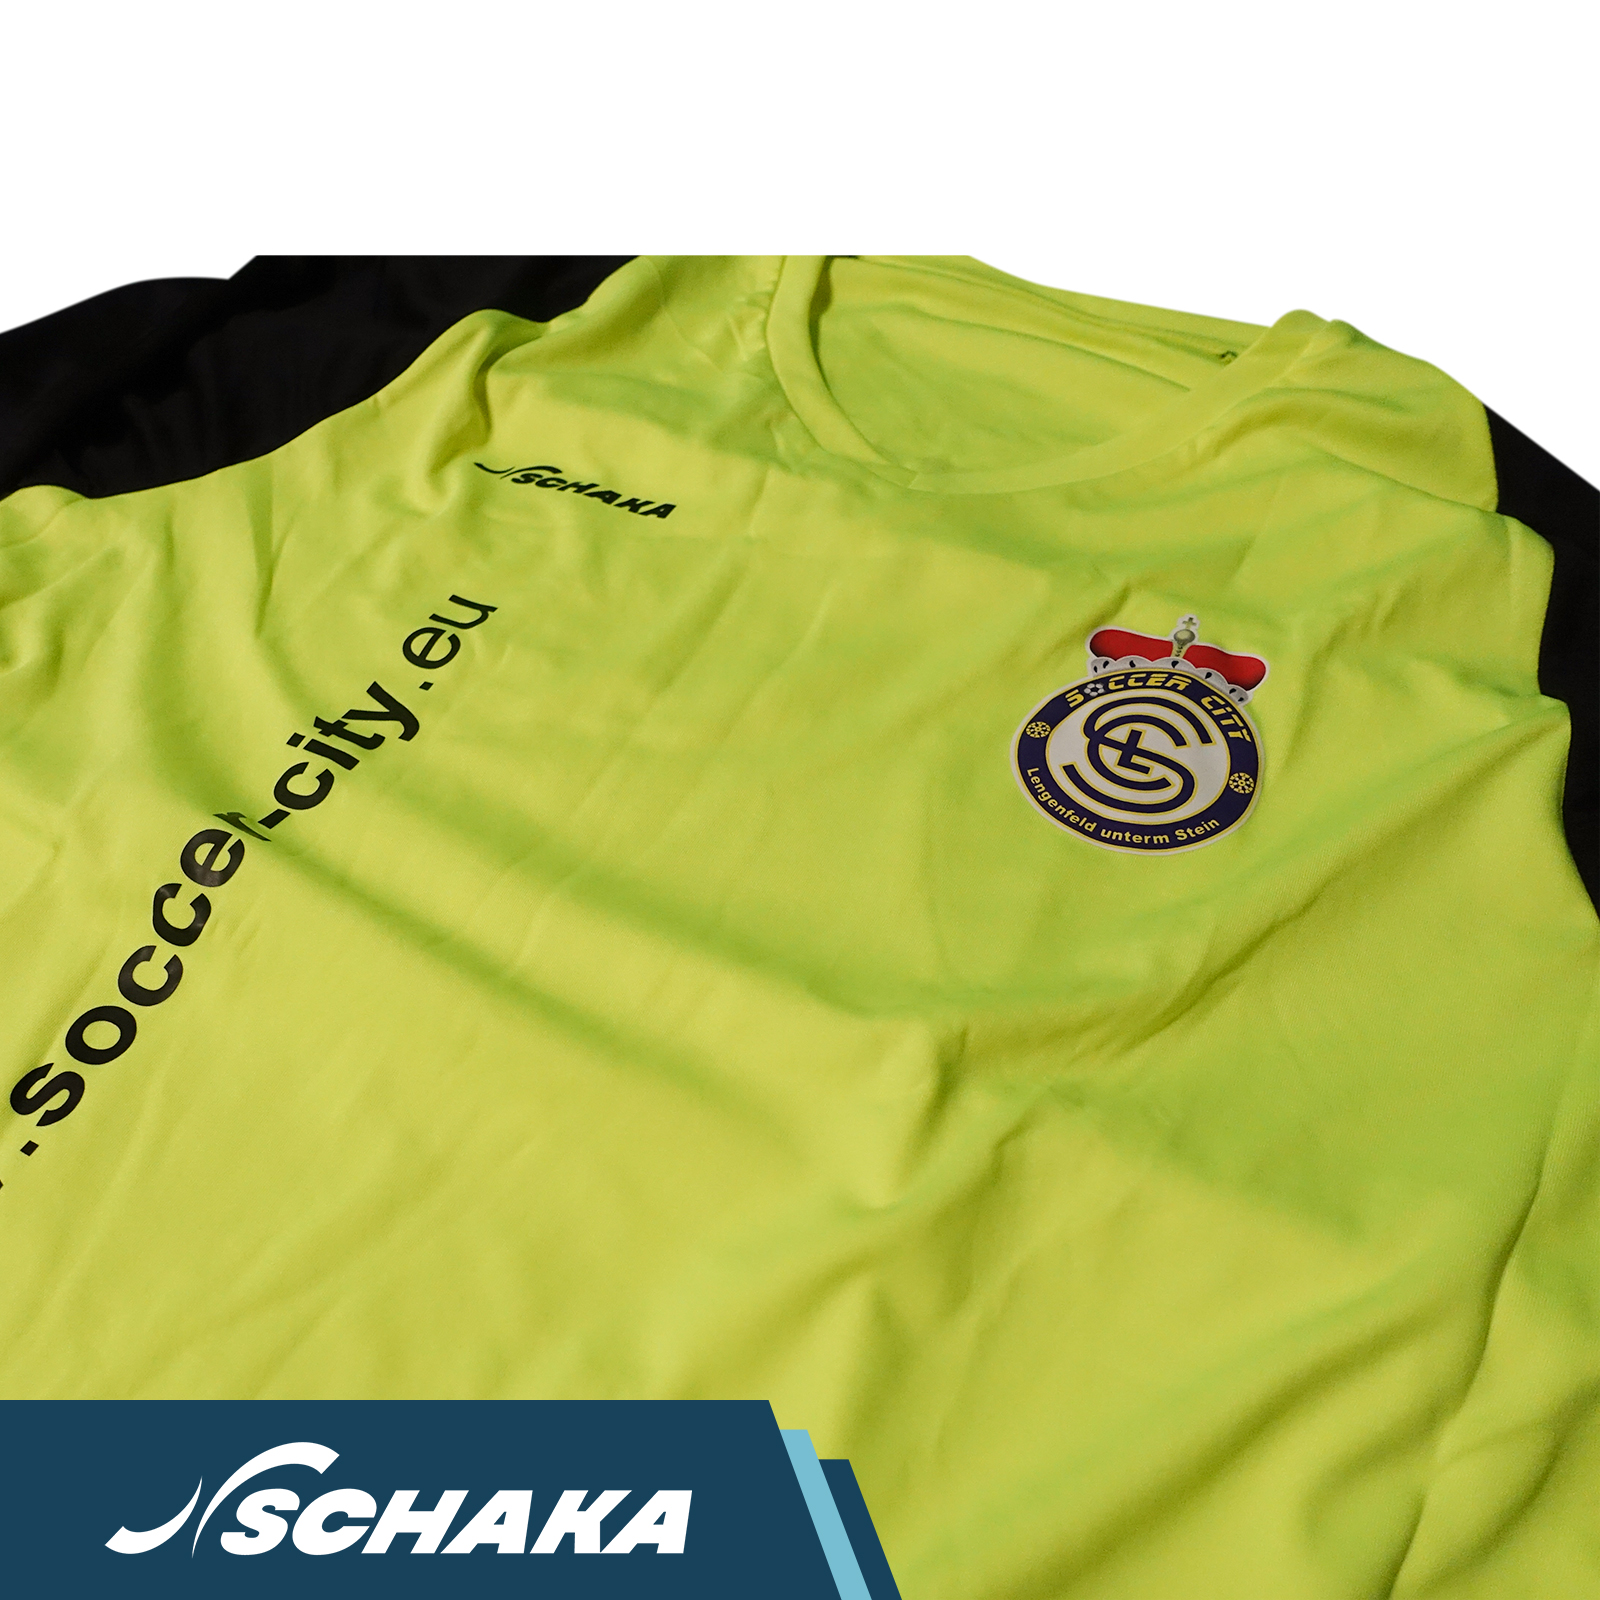 Schaka Goalkeeper Jersey MUA Soccer City Edition